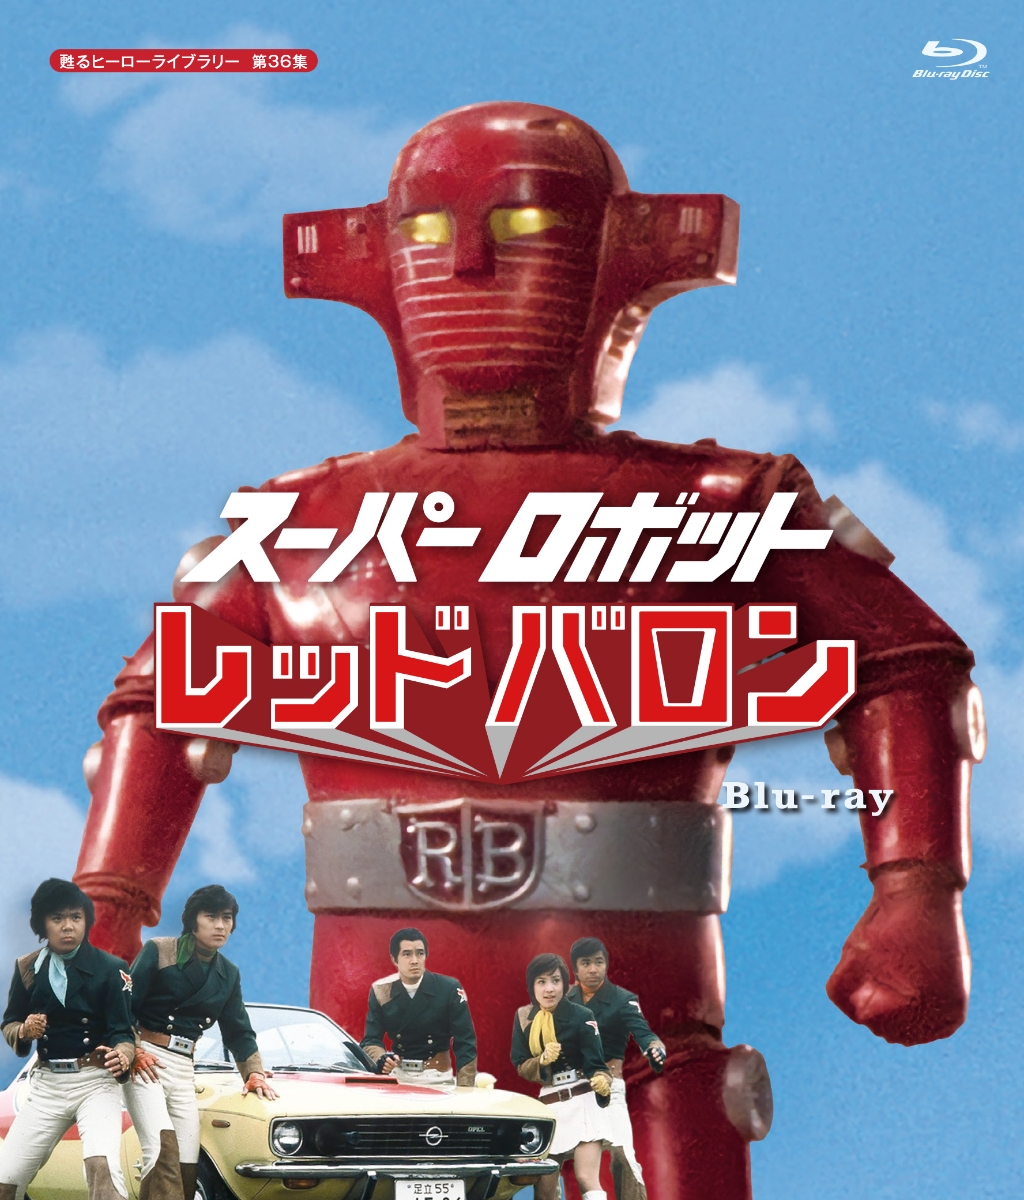 スーパーロボット レッドバロン【Blu-ray】 [ 岡田洋介 ]画像